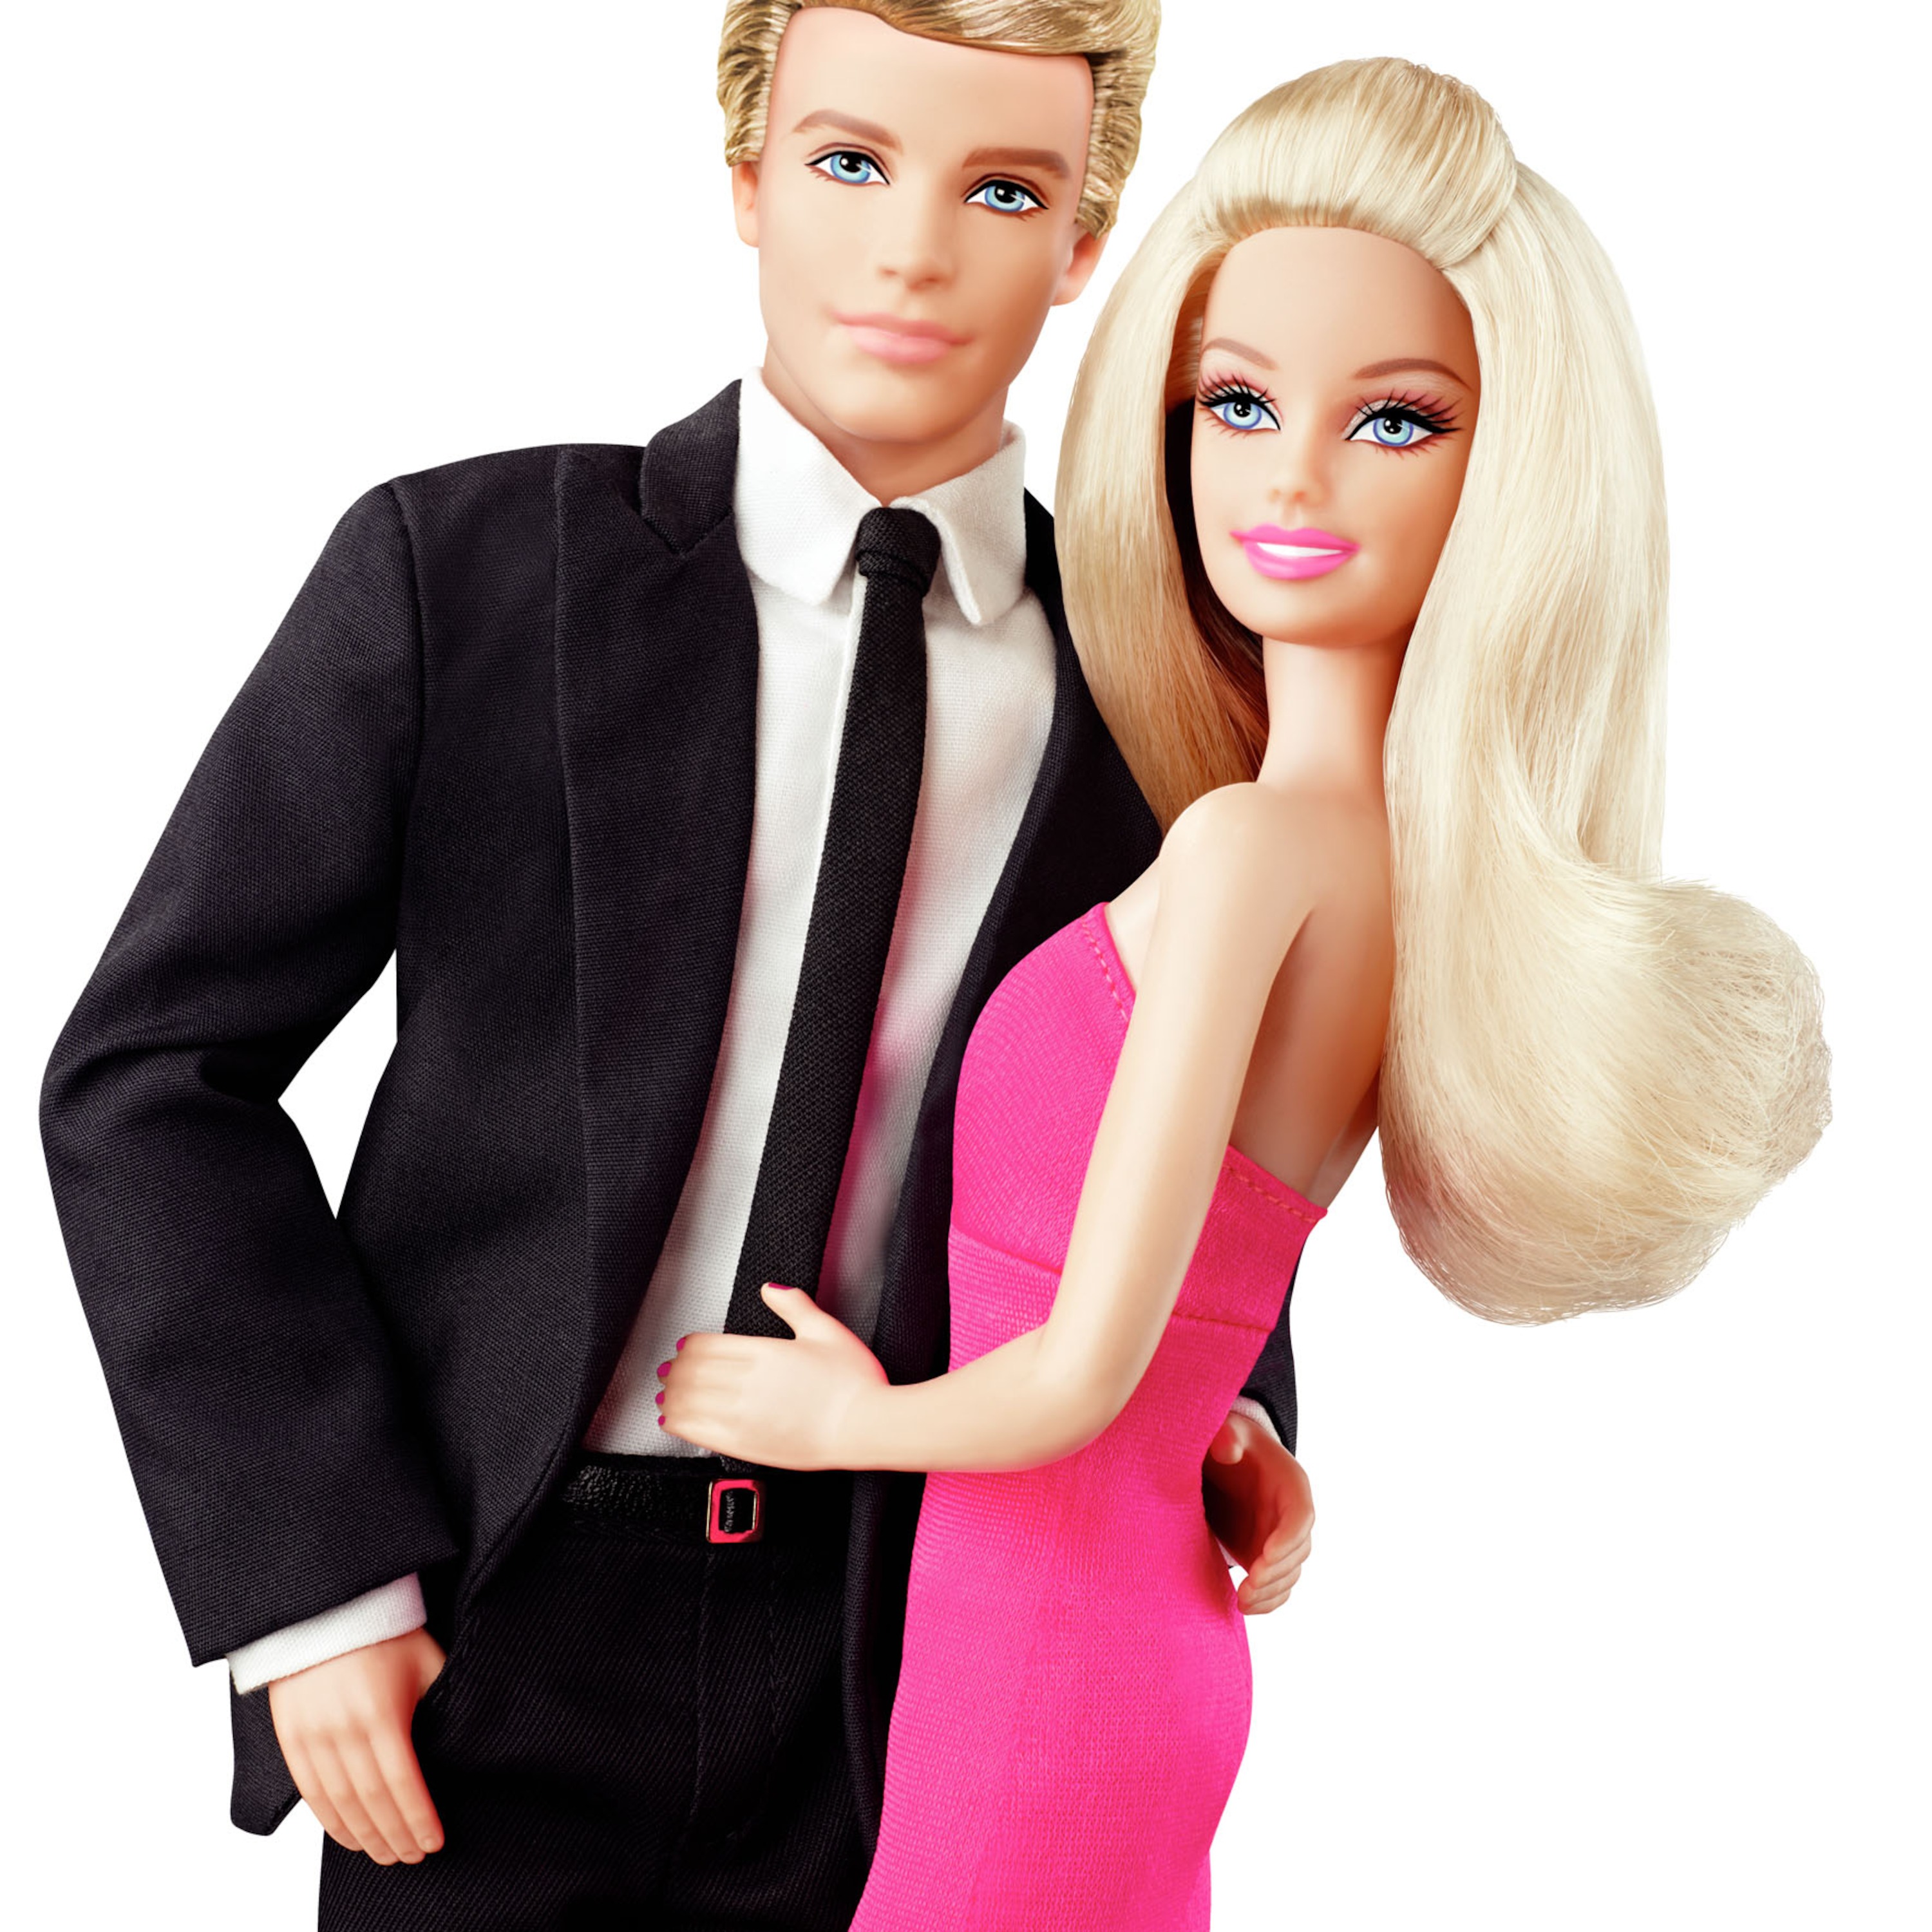 Barbie&Ken's Dating Show!